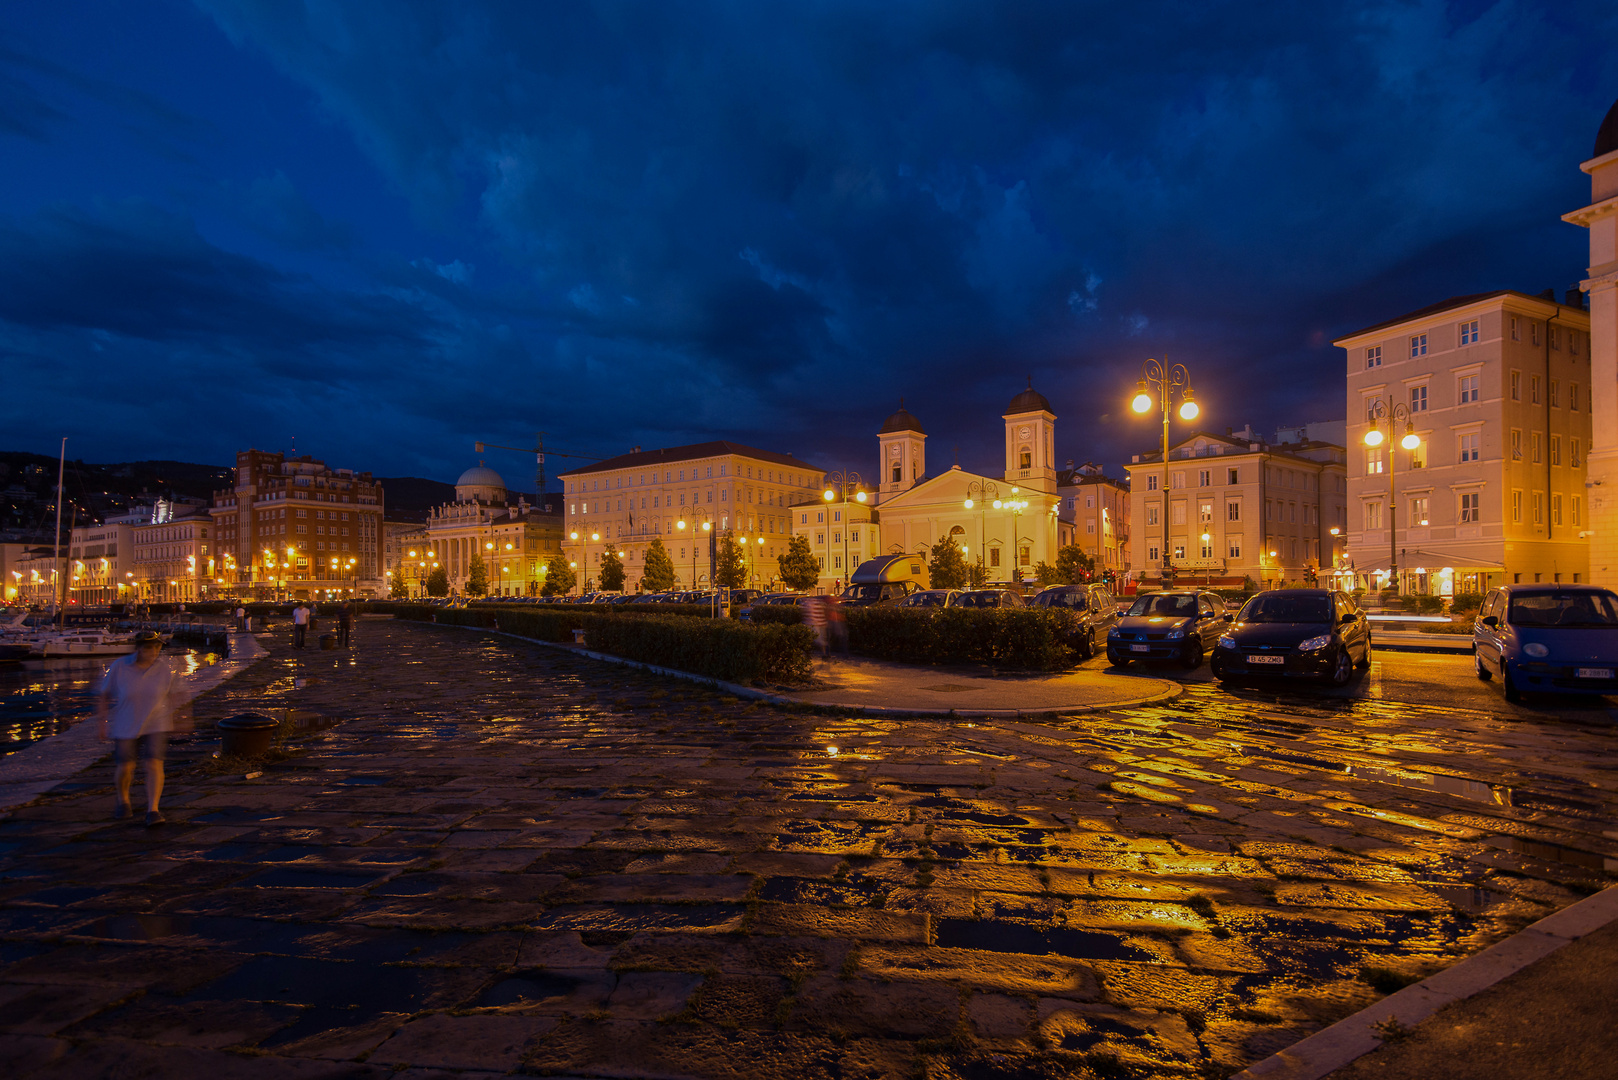 Trieste abends unmittelbar vor einem Sturm .... stimmungsvolles Foto